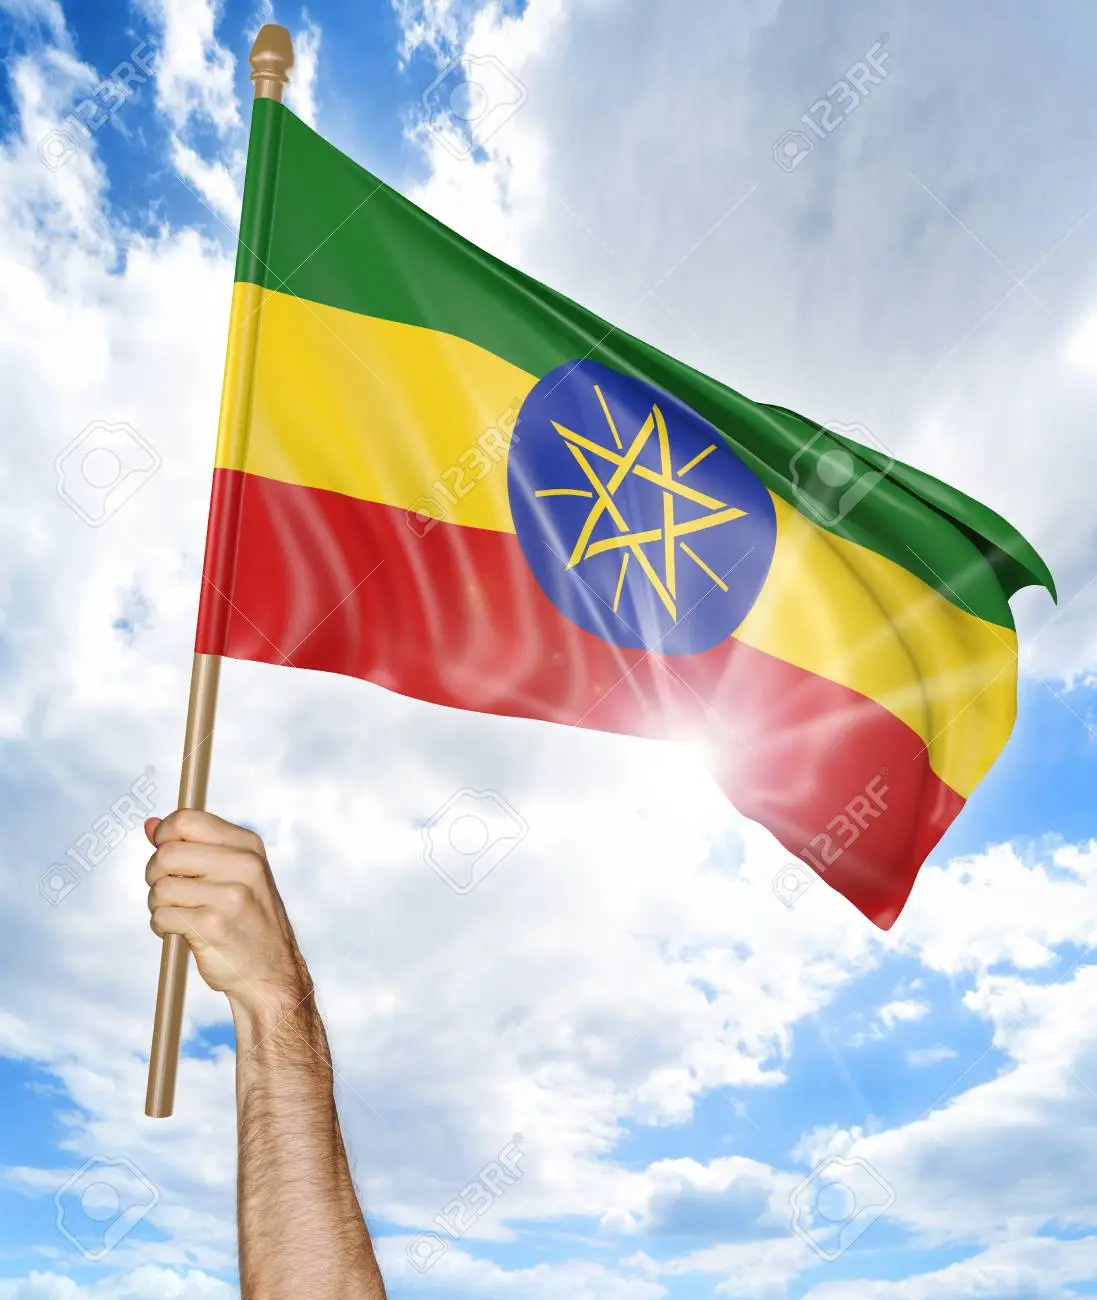 SOOMAALIDA BIDIXDA FOG (PRO-ETHIOBIANS)